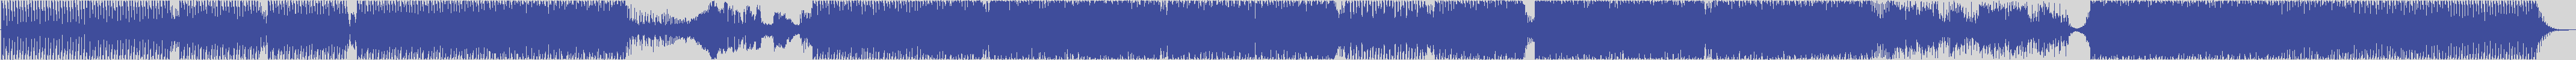 definitiva [DEF011] De - Javu - Never [Piparo's Bluett Mix] audio wave form